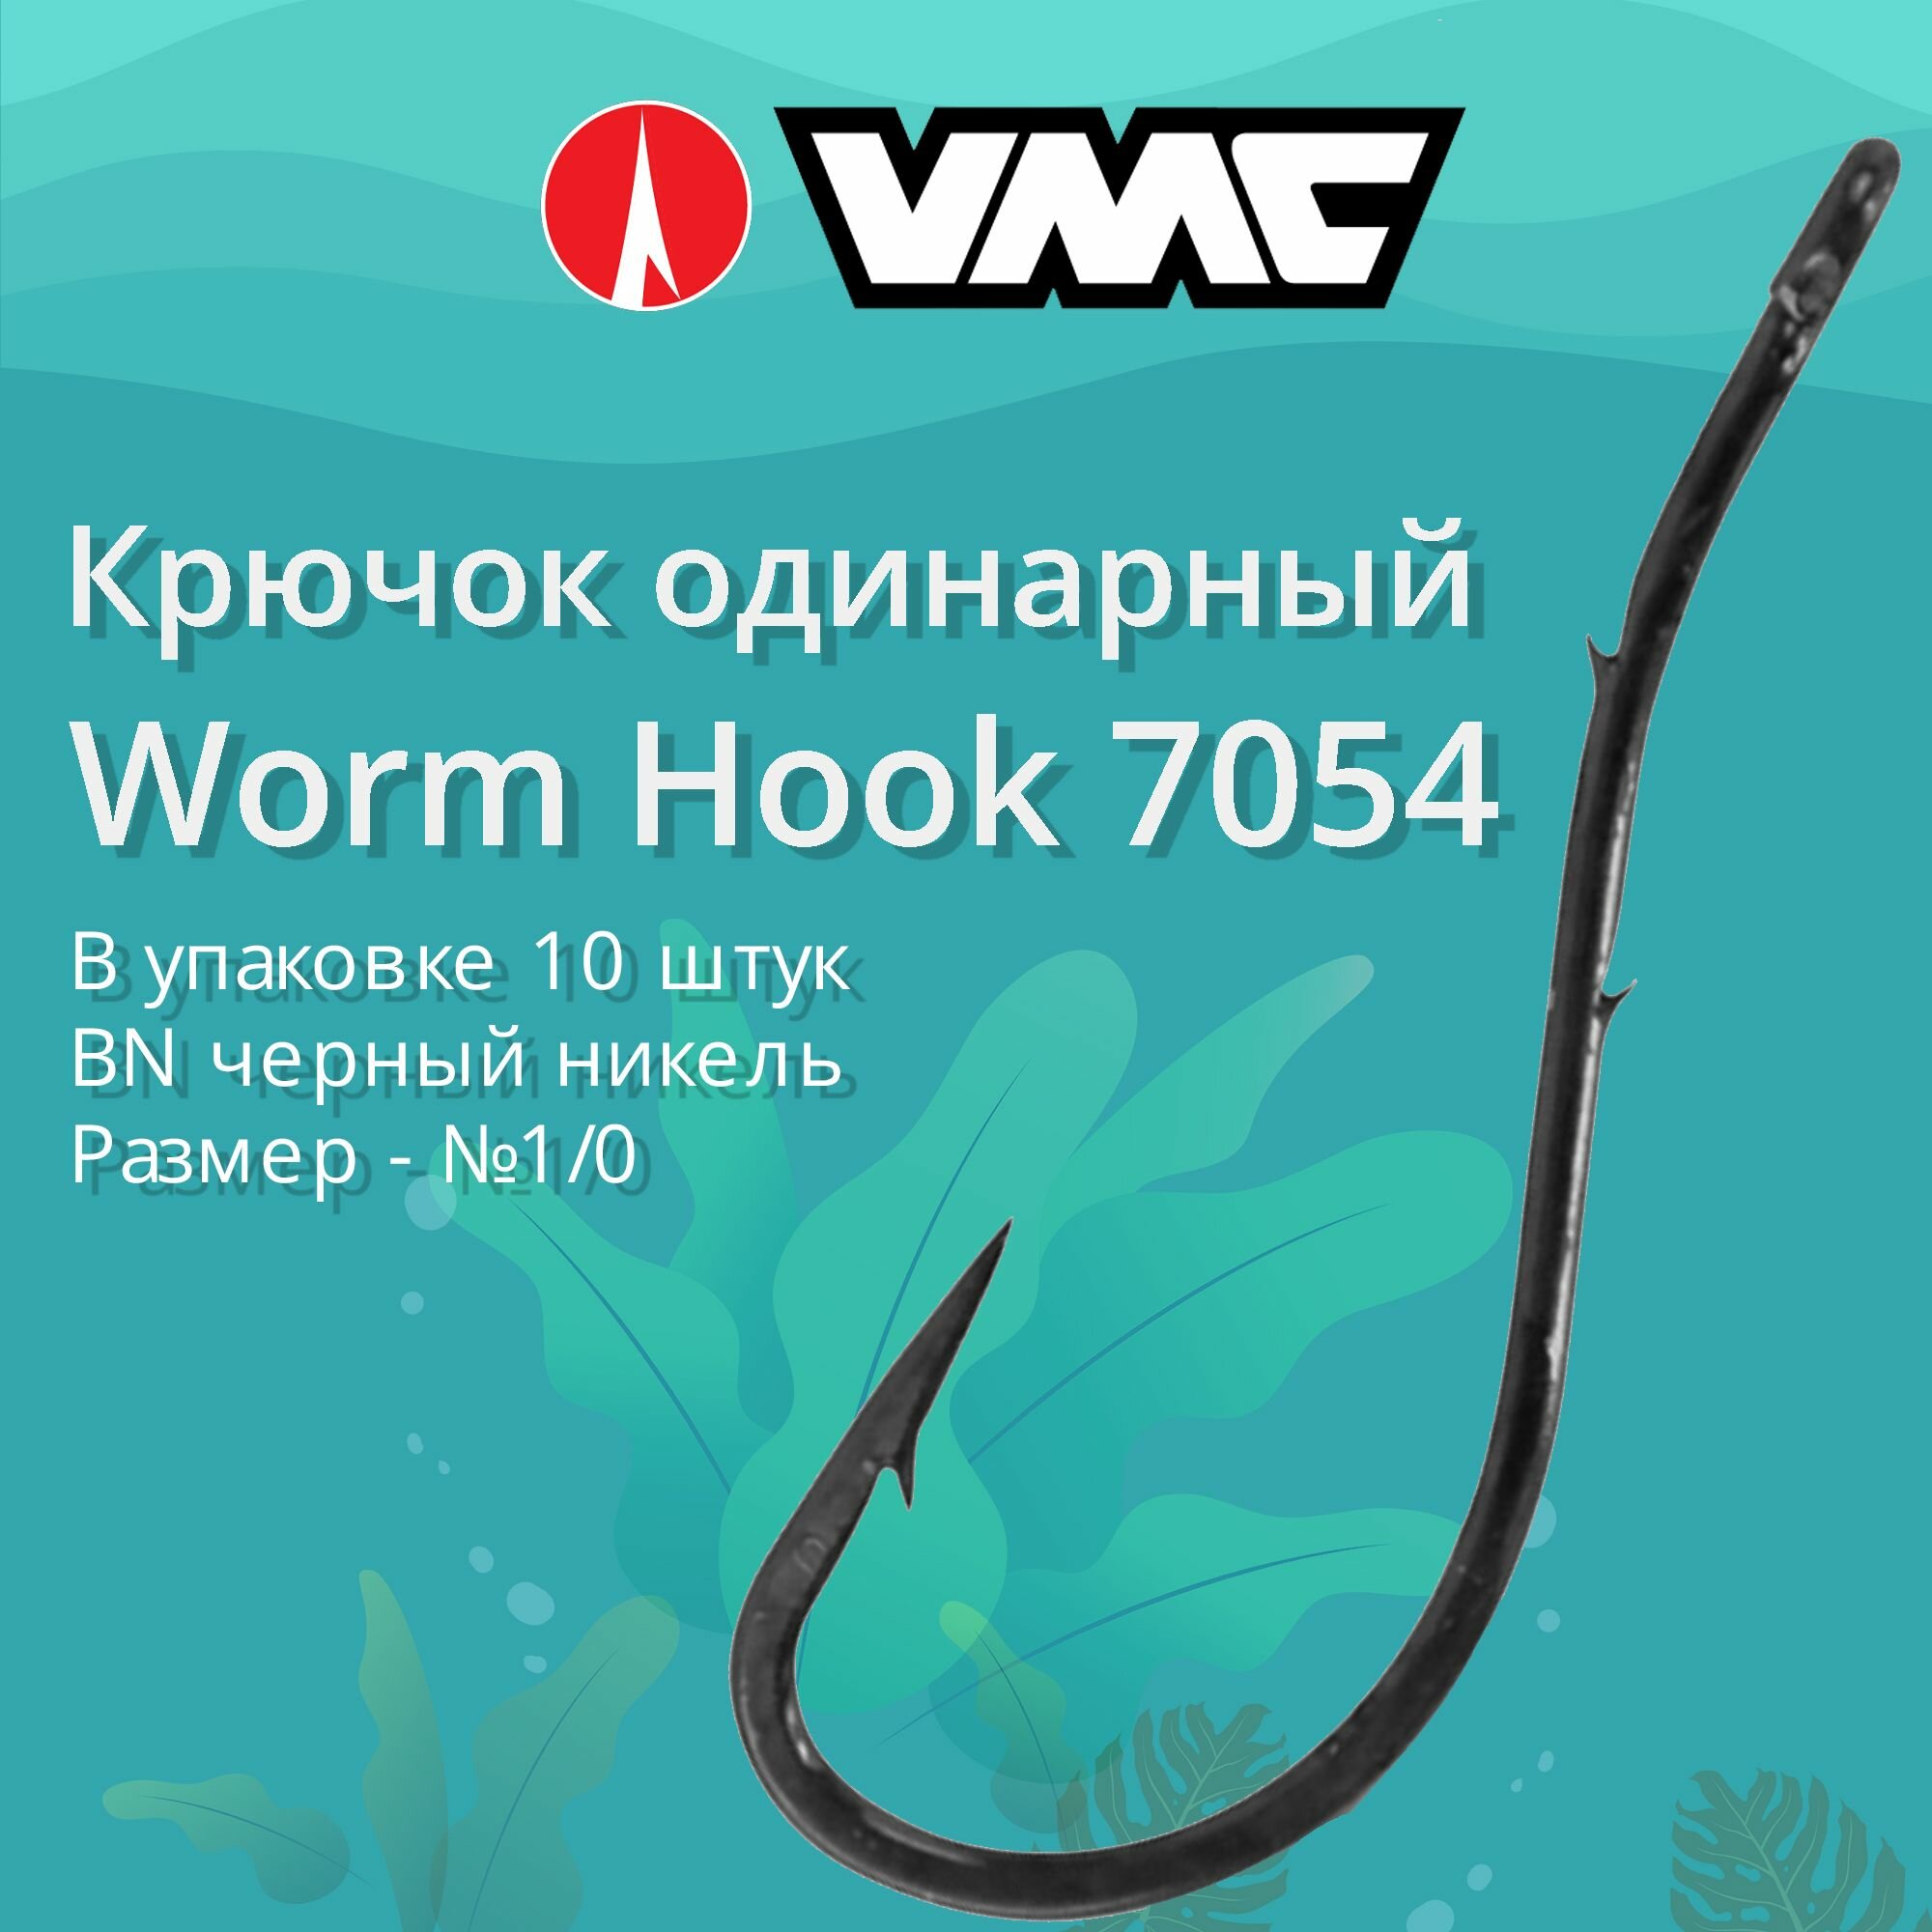 Крючки для рыбалки (одинарный) VMC Worm Hook 7054 BN (черн. никель) №1/0 упаковка 10 штук